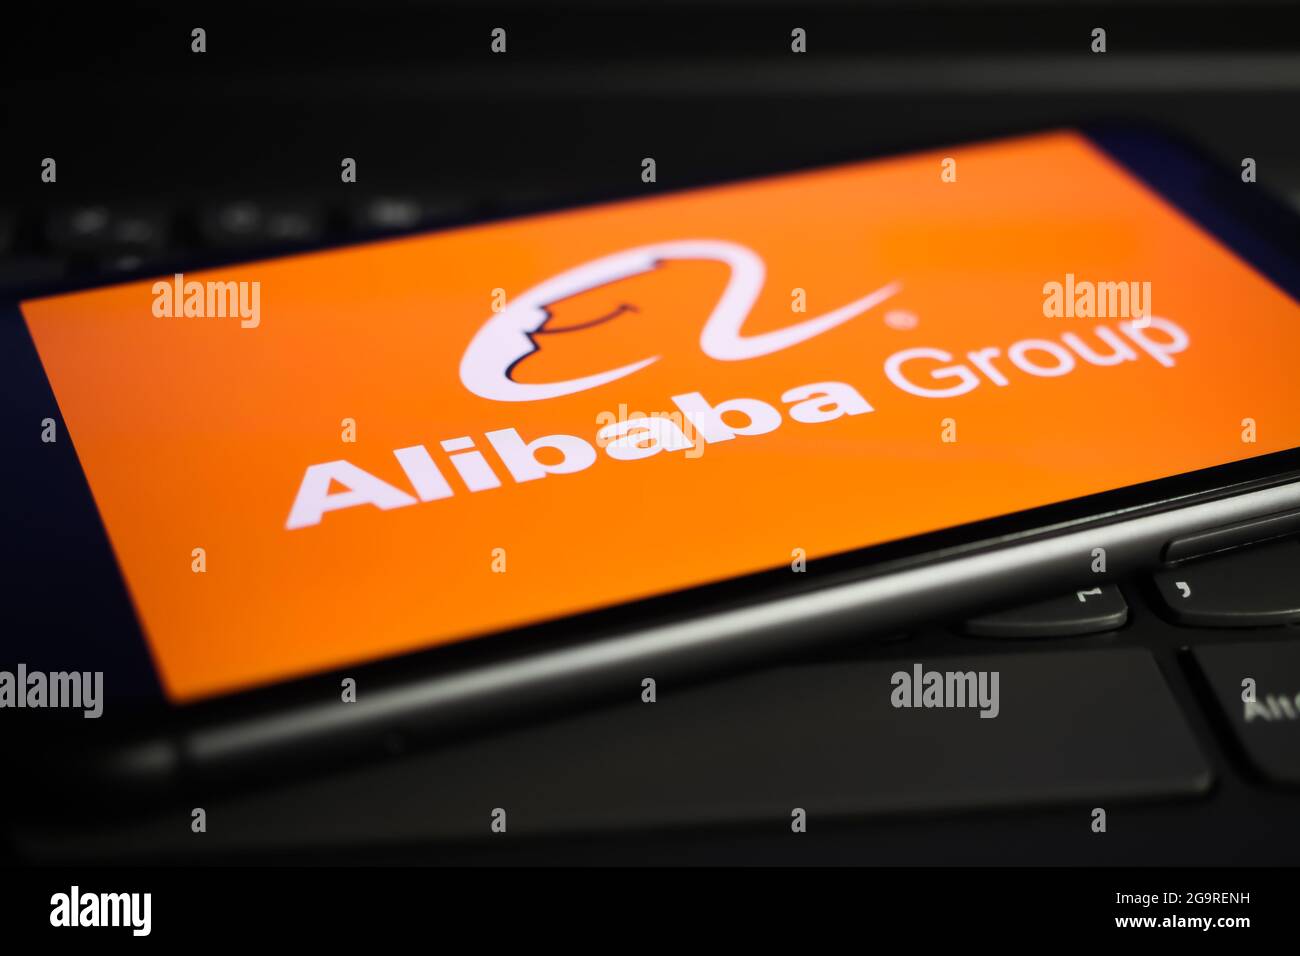 Mobile alibaba Banque de photographies et d'images à haute résolution -  Alamy